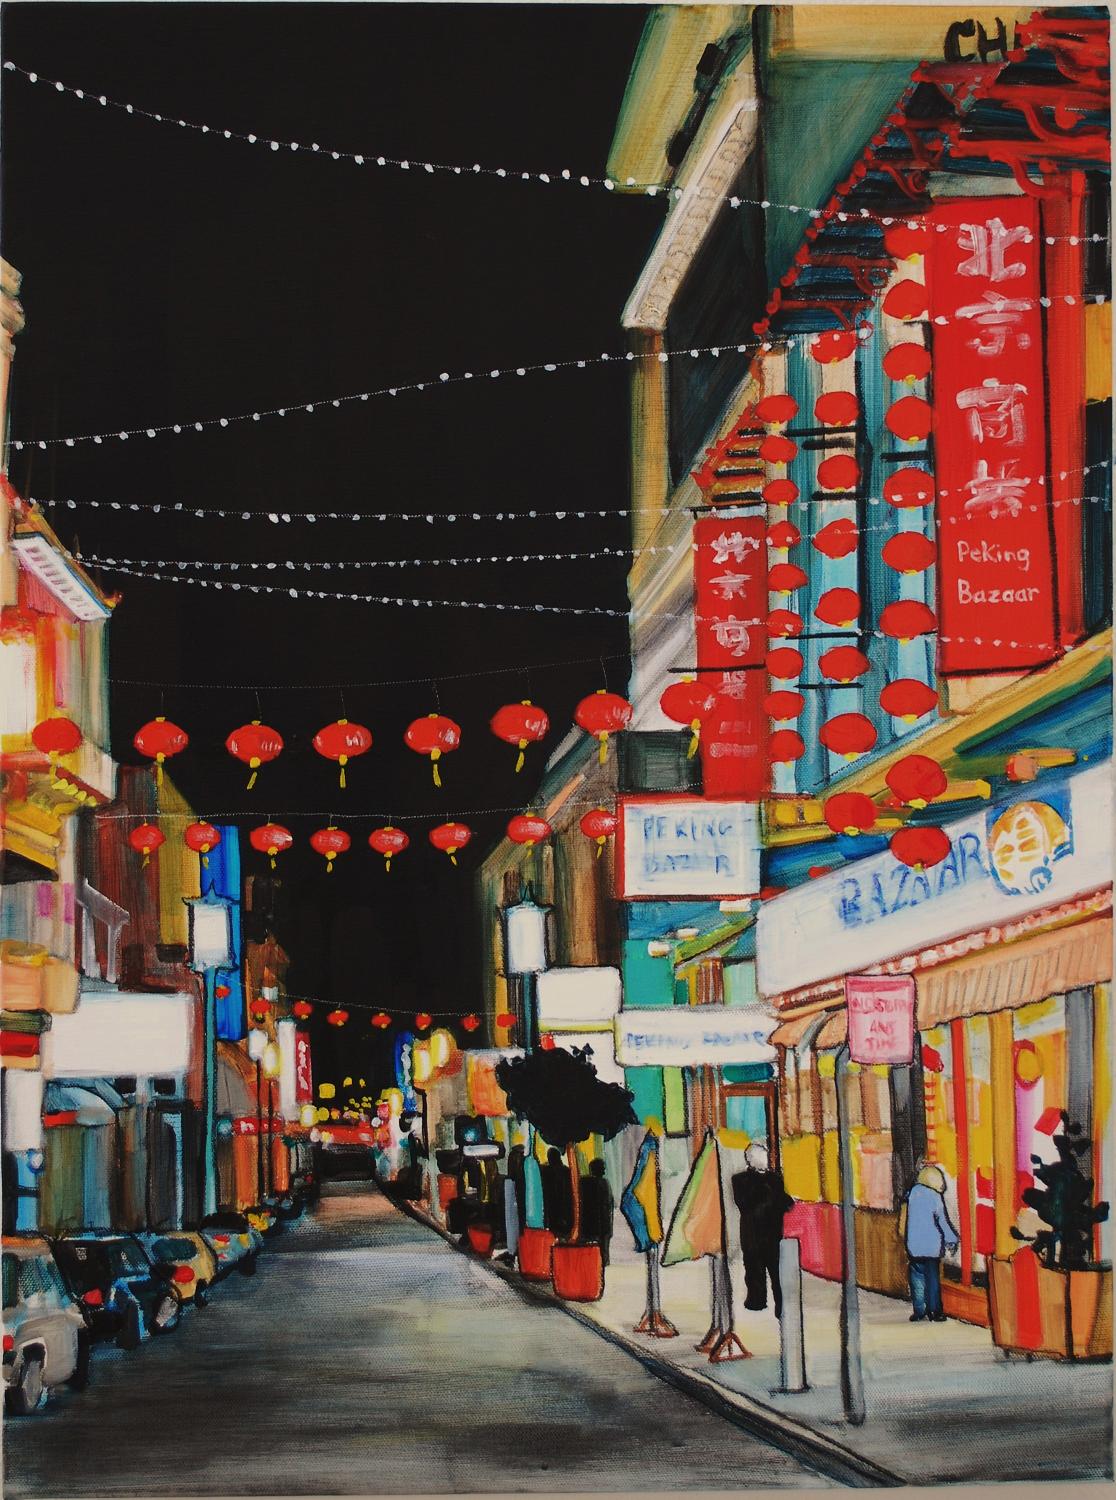 Peking Bazaar (Cityscape) by Marianne Bland